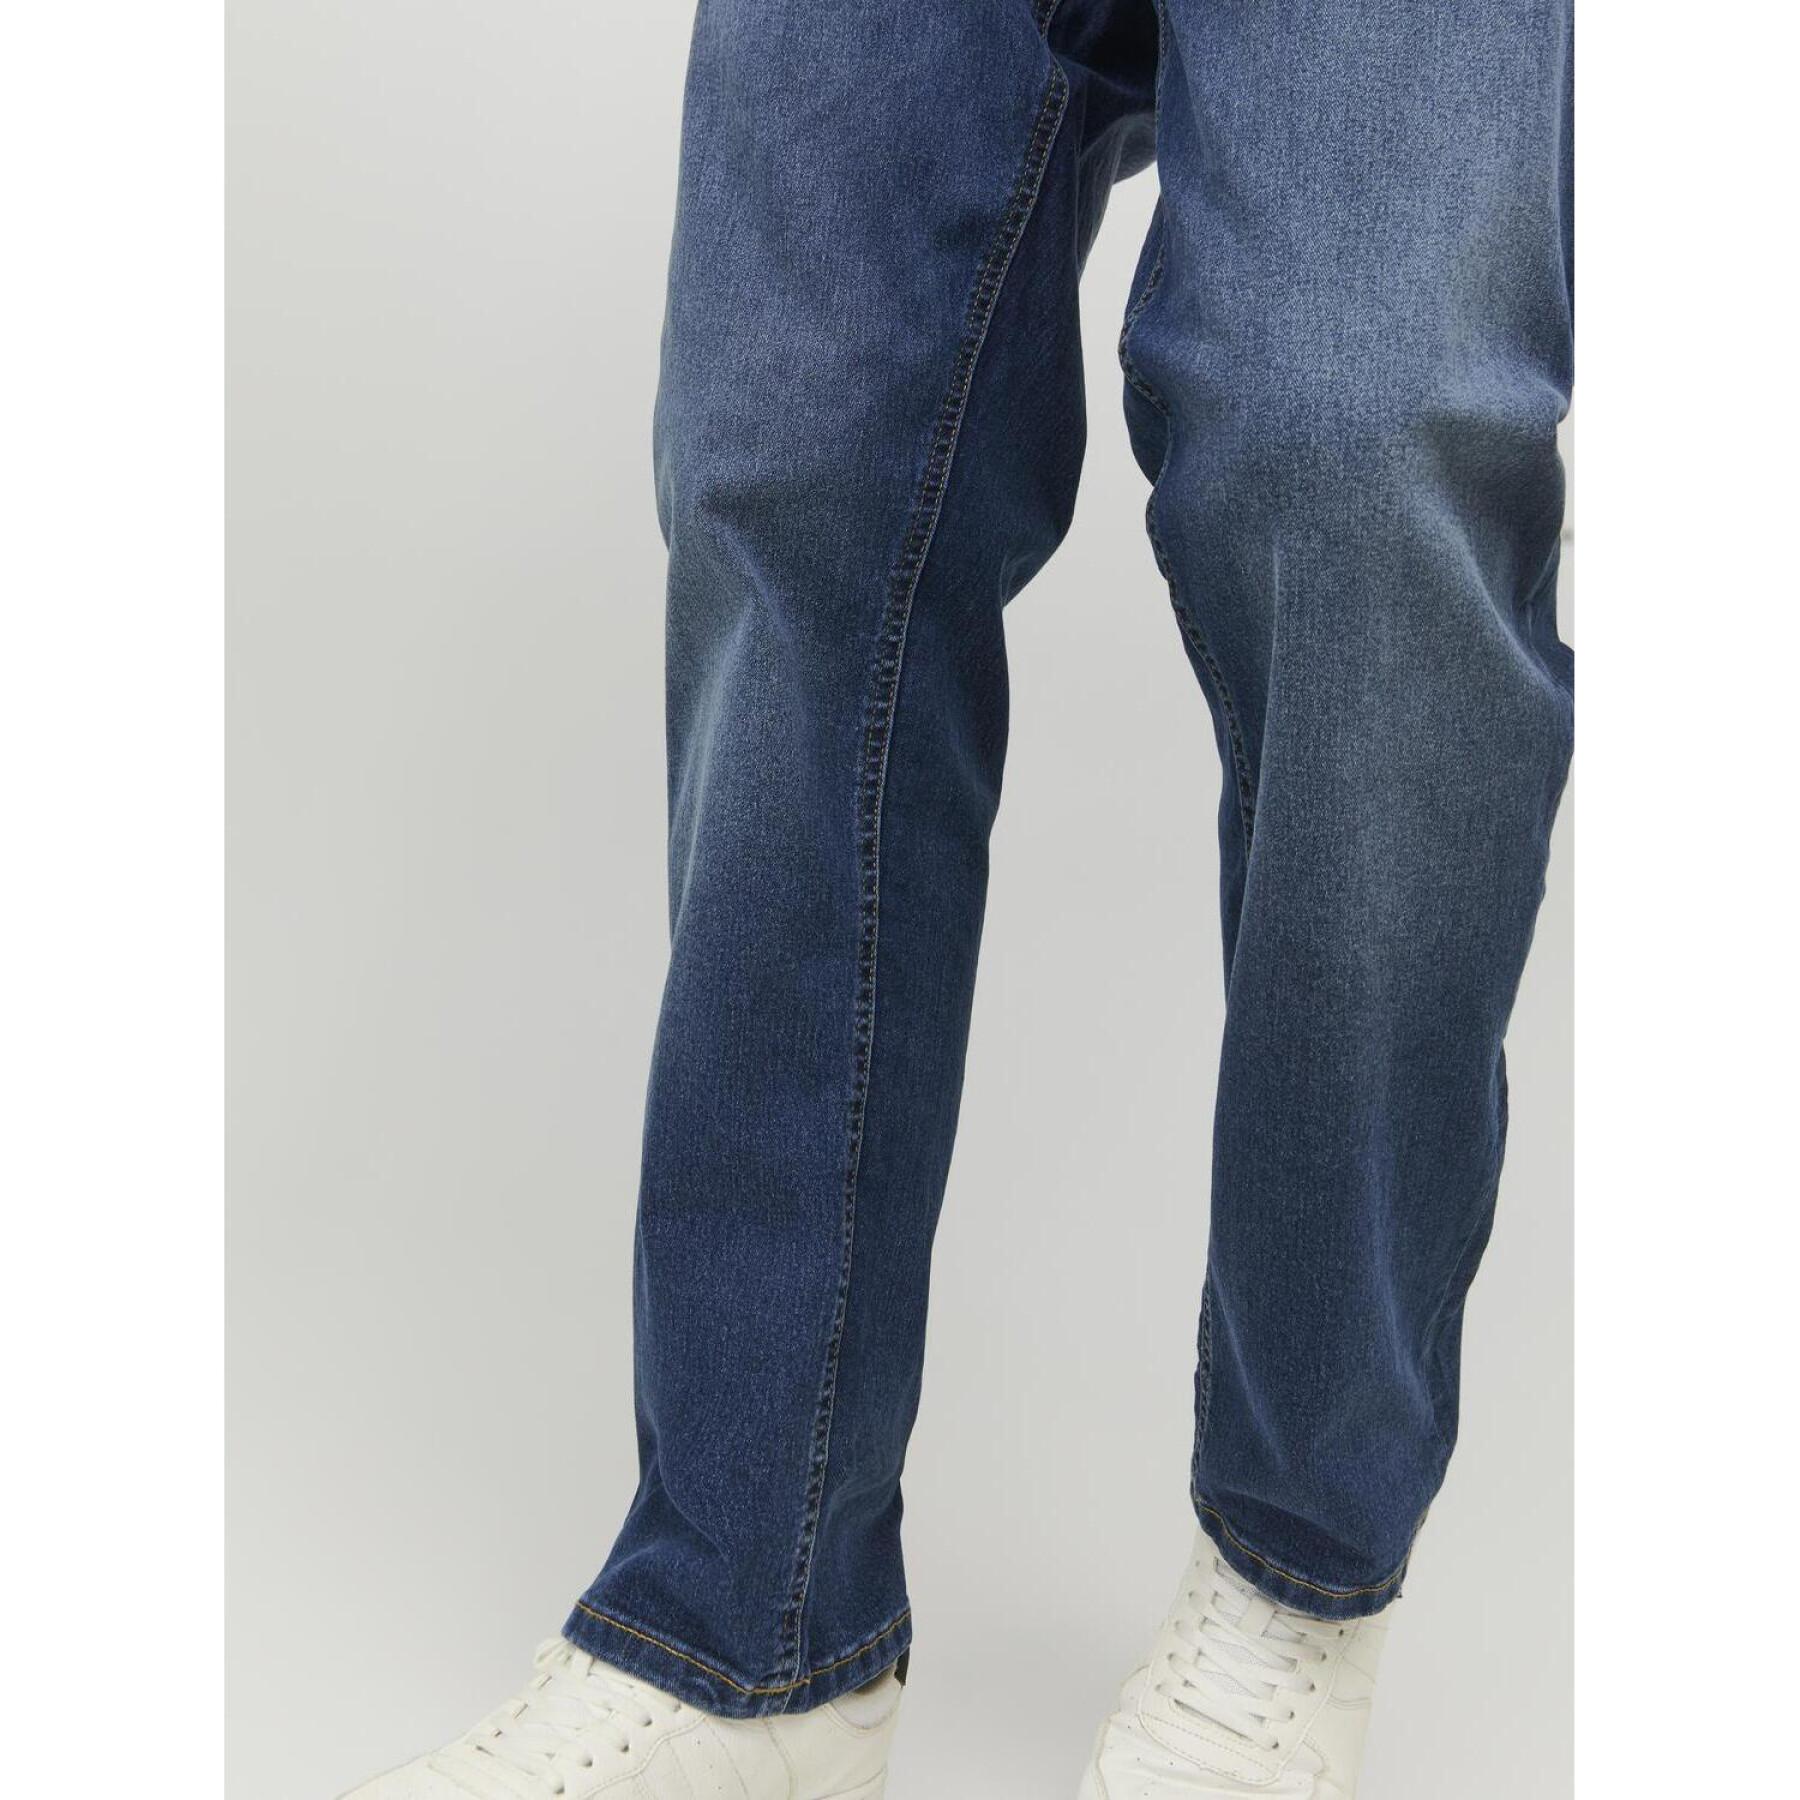 Jeans in großen Größen Jack & Jones Lenn Original 070